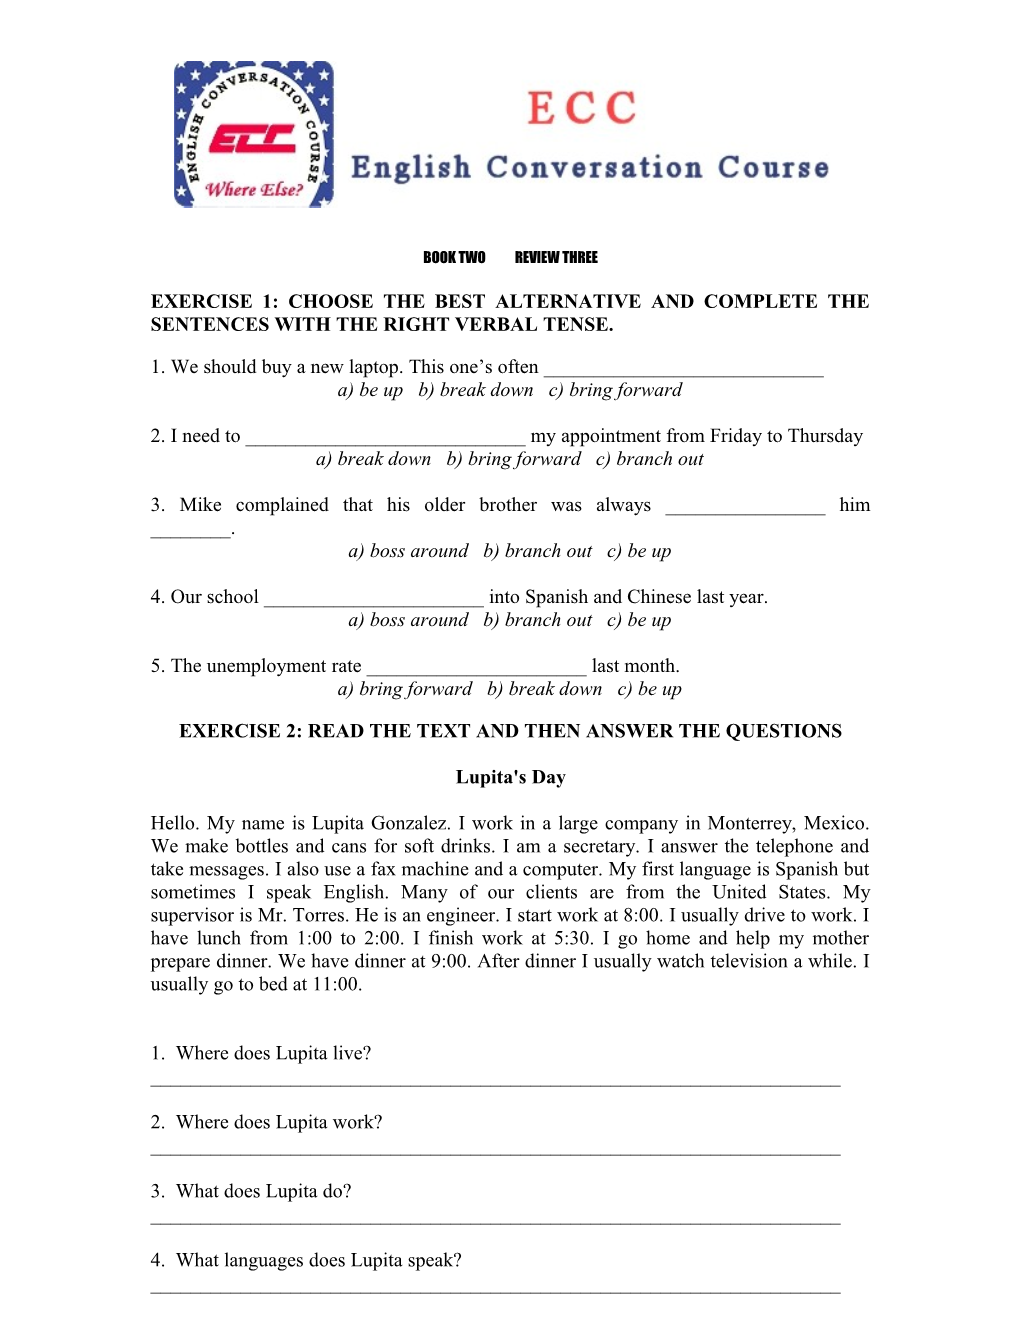 English Conversaton Course